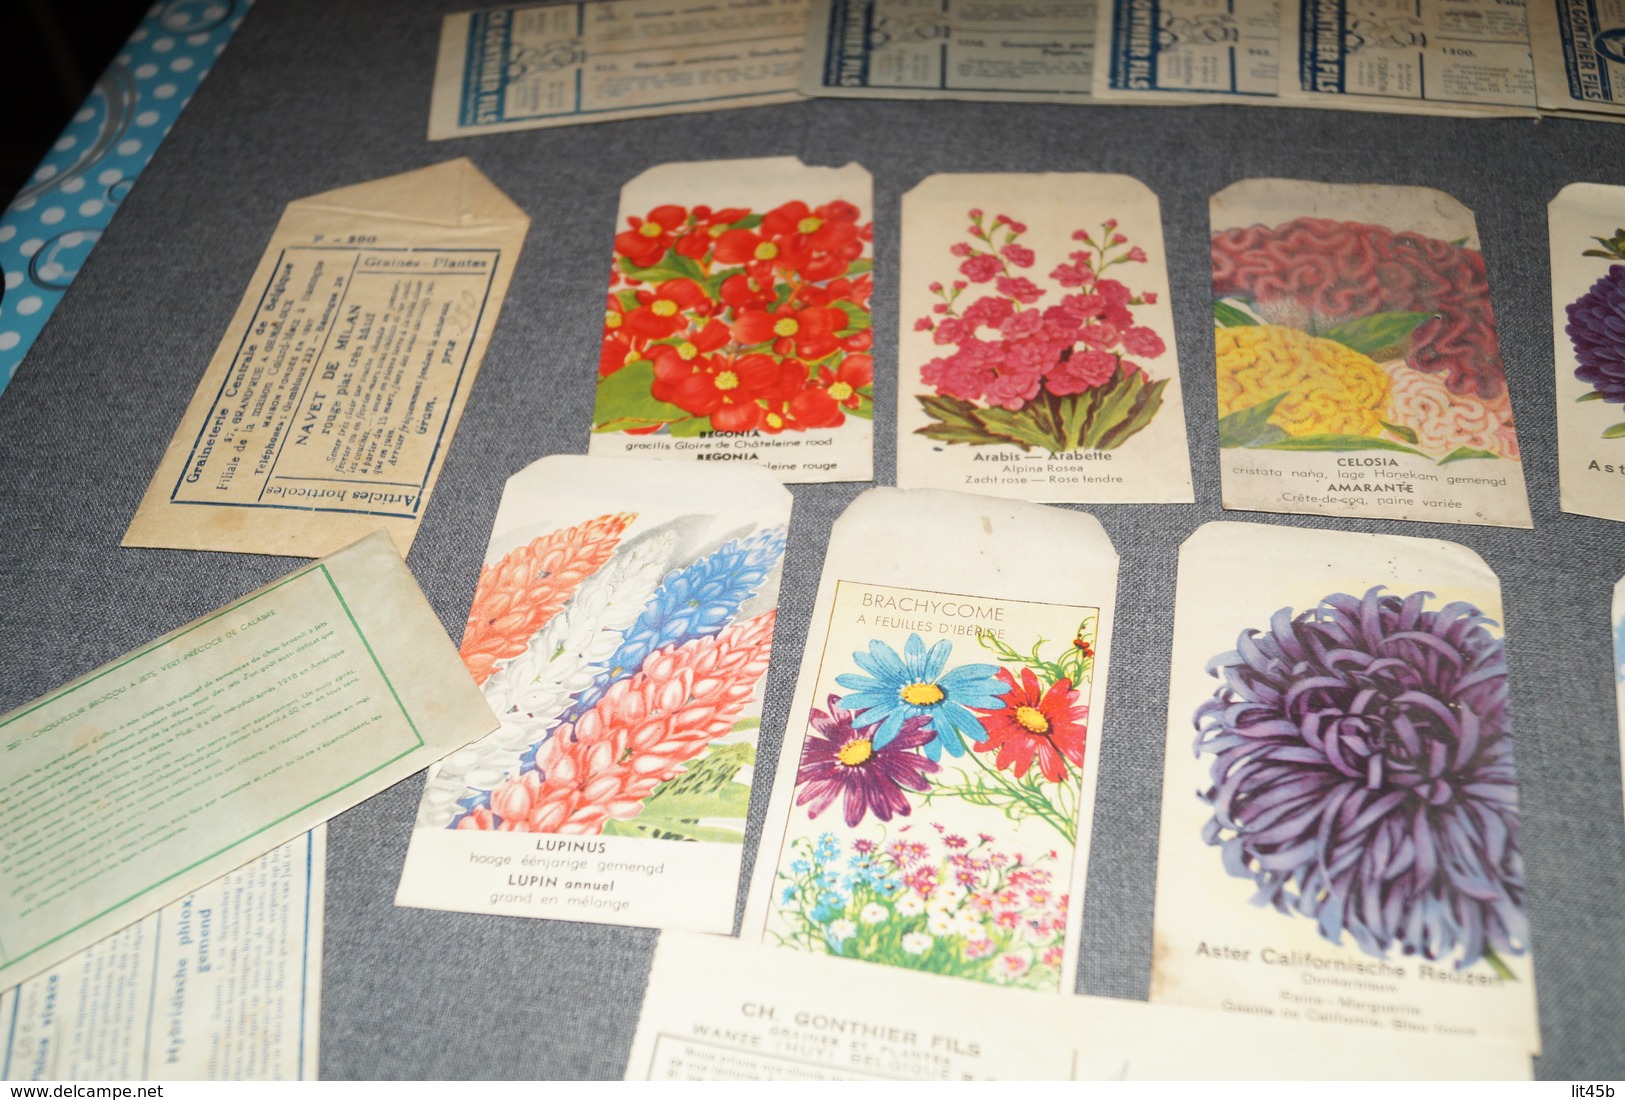 Très Beau Lot D'ancien Paquets De Semences (20),Fleurs,graines,Gonthier,etc...1947 Avec Facture D'époque,jardinage - Publicités